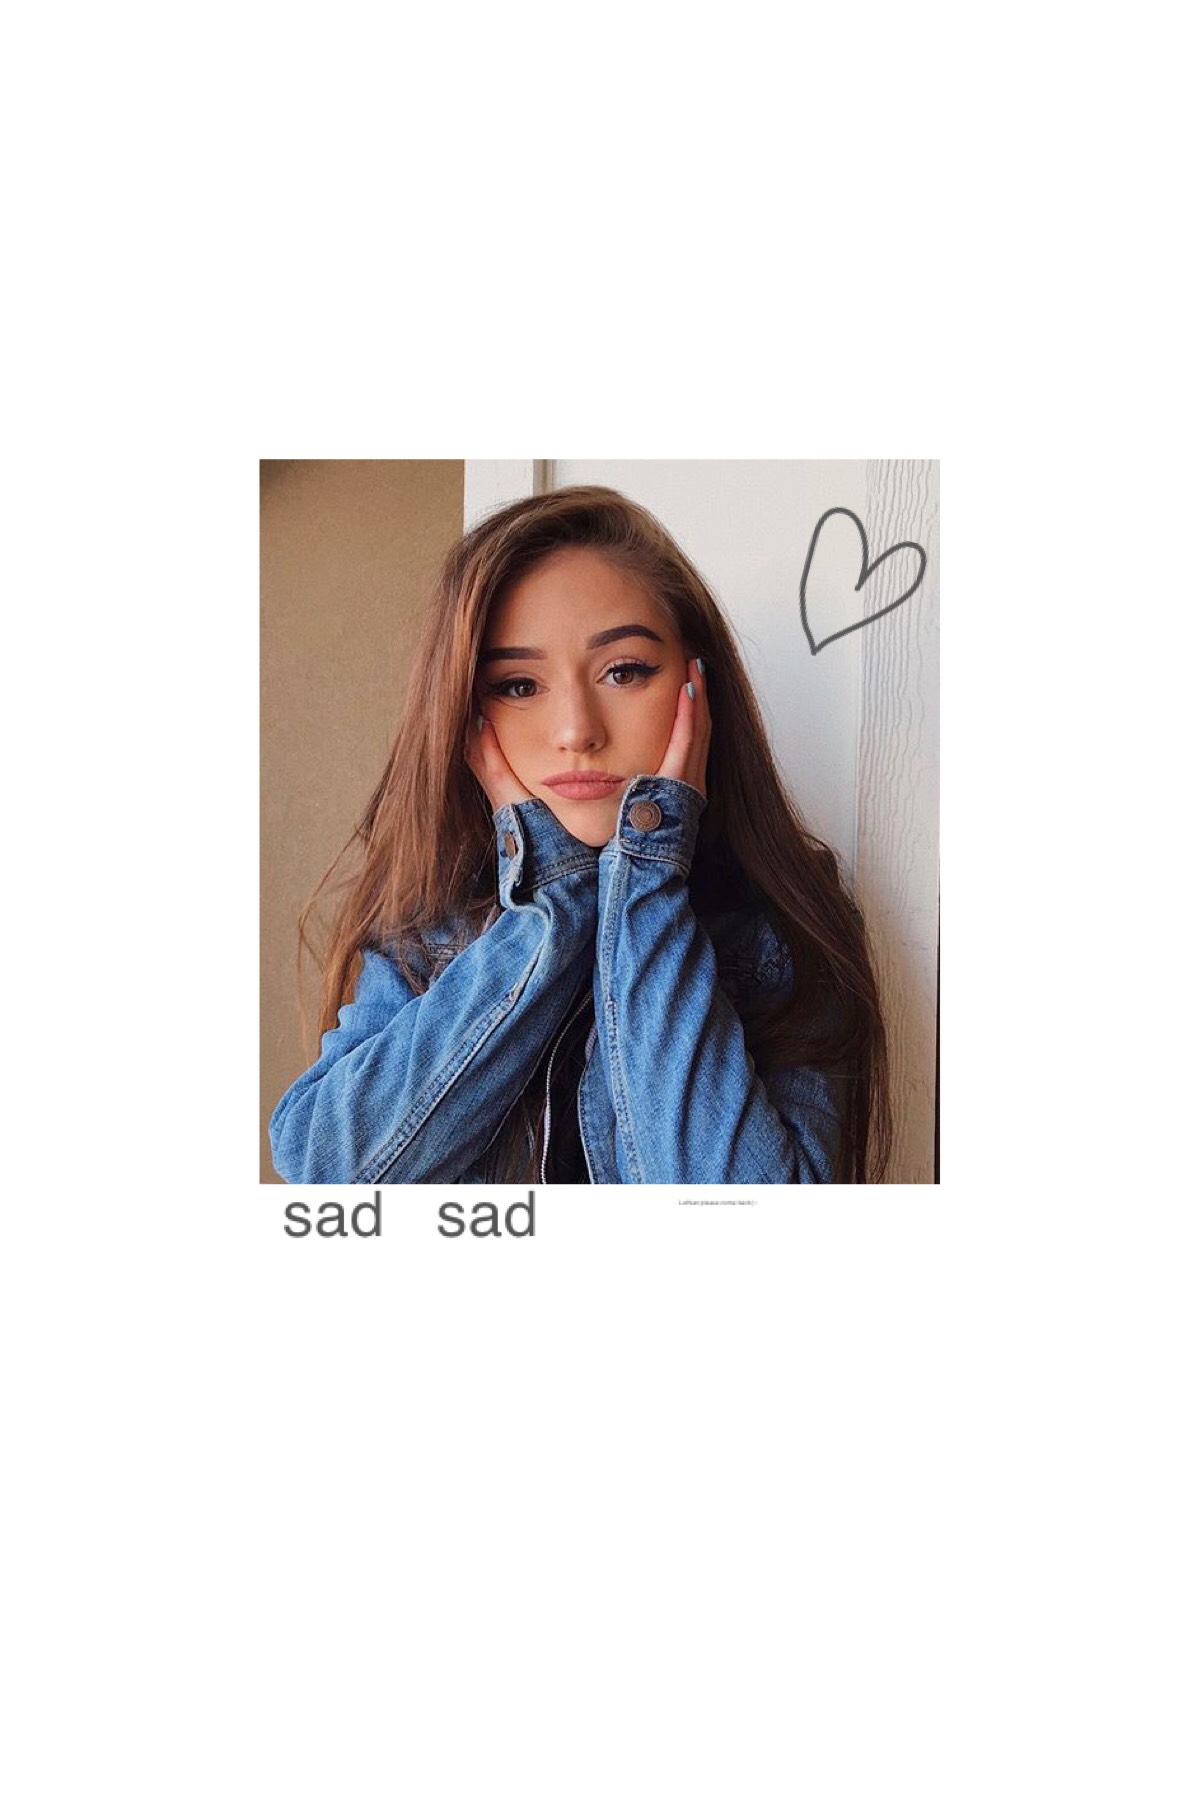 sad girl ):